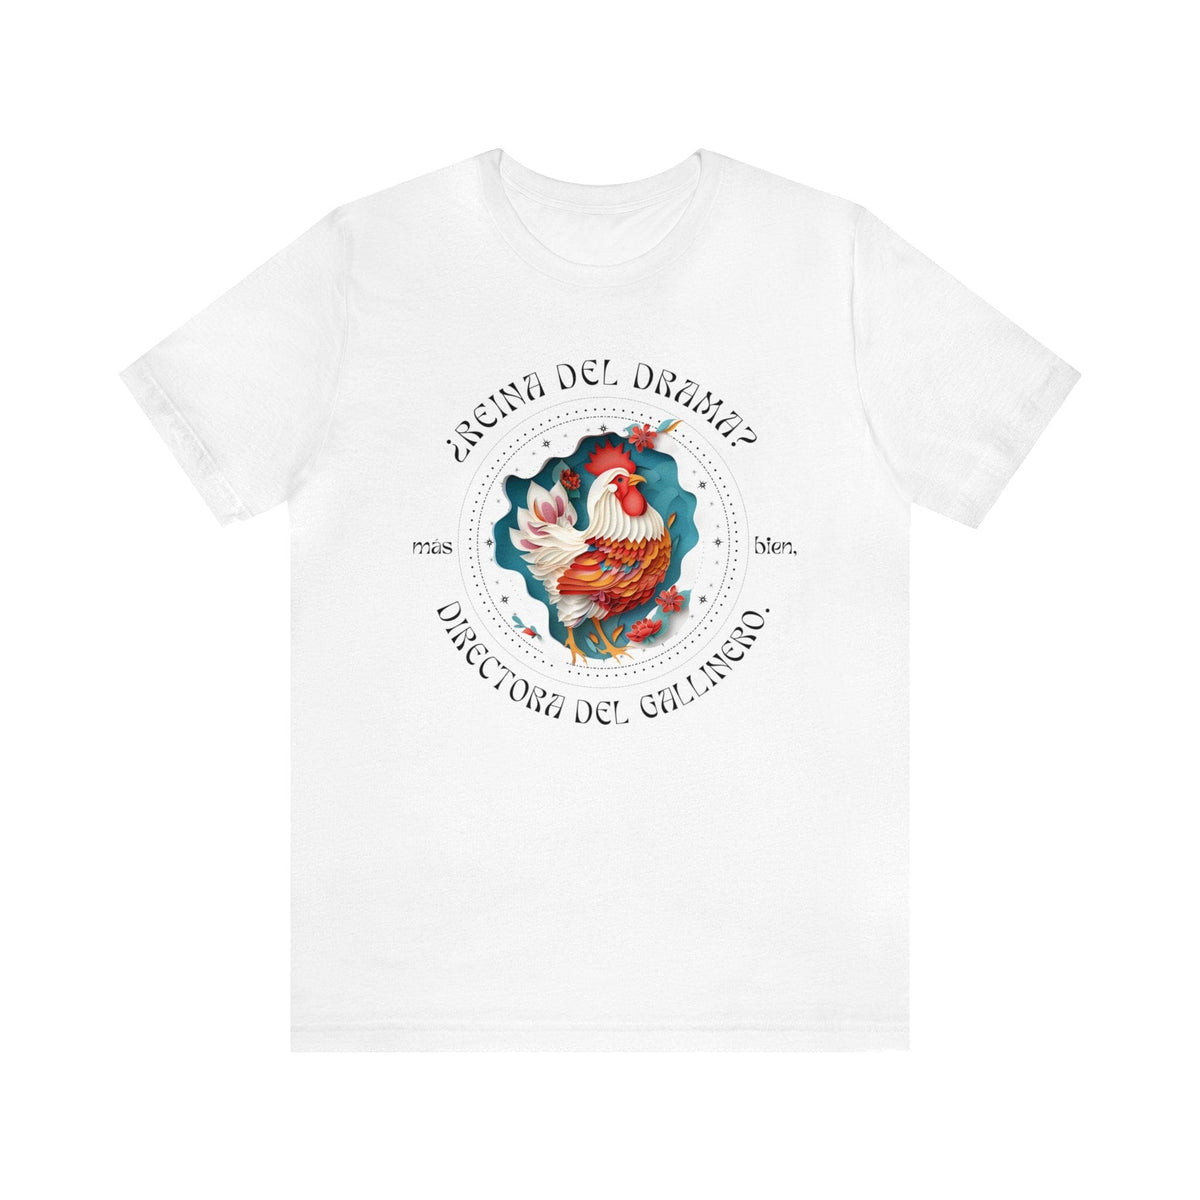 Directora del Gallinero: La Camiseta para la Reina del Drama - Regalo Exclusivo para Mamá T-Shirt Printify White S 